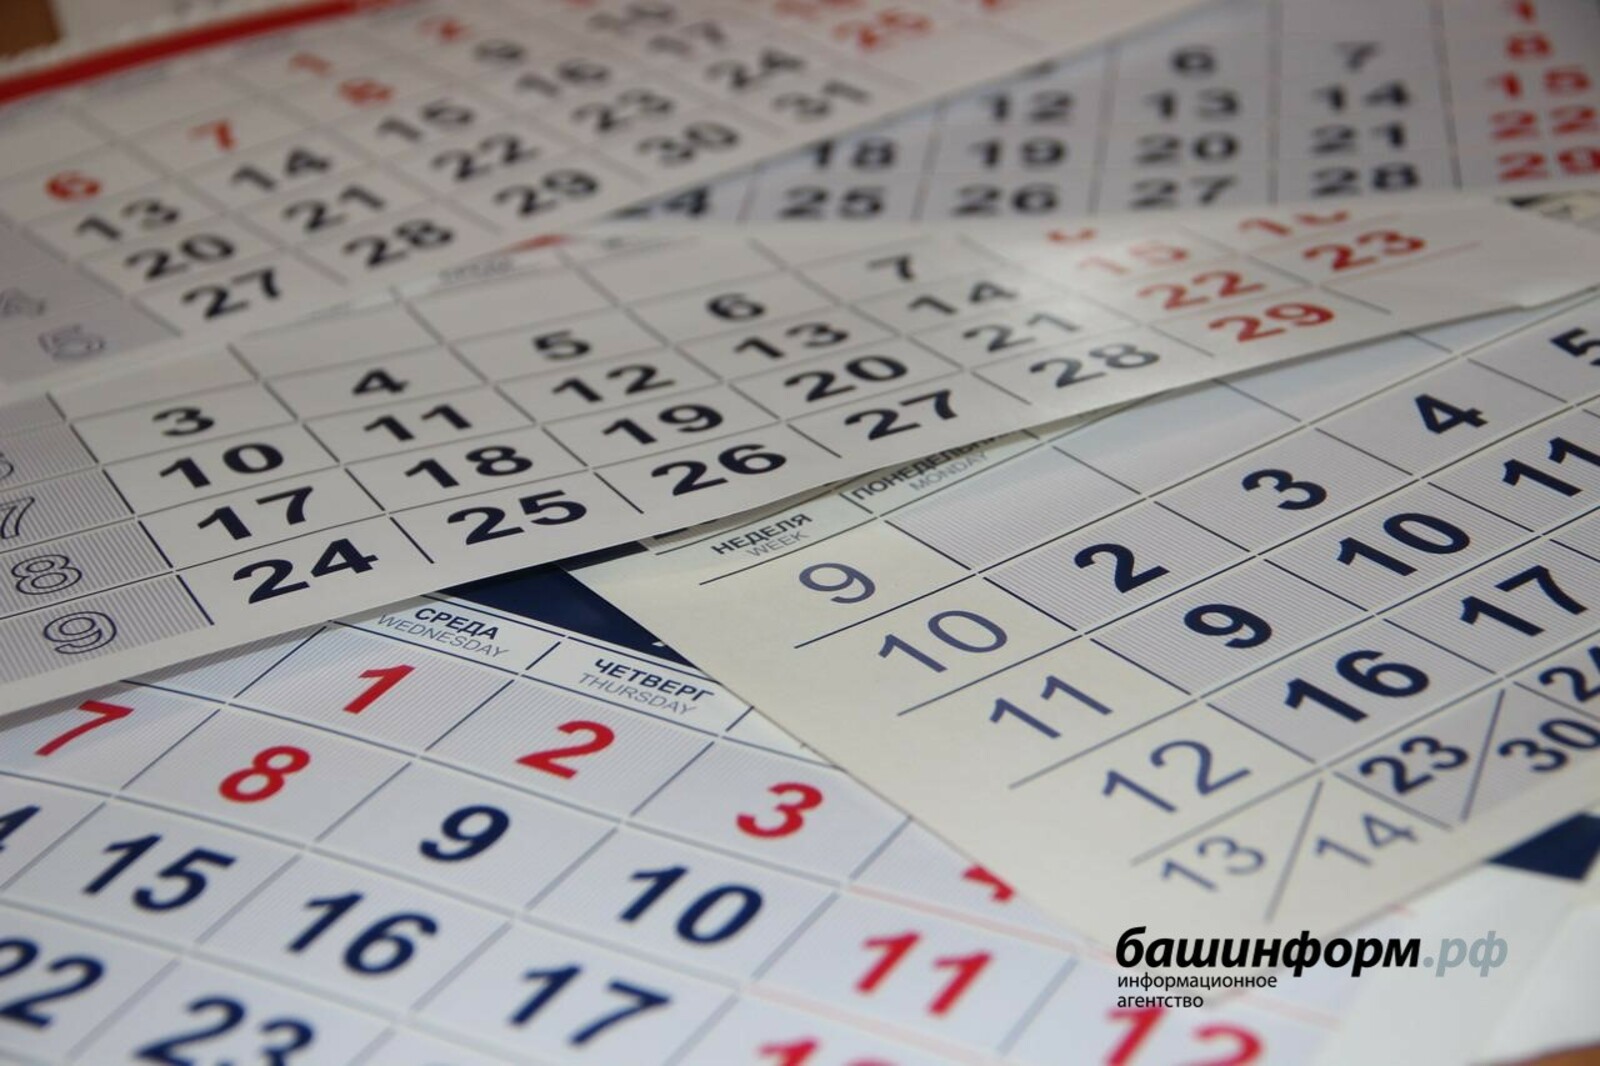 Правительство России утвердило календарь выходных и праздничных дней на 2022 год